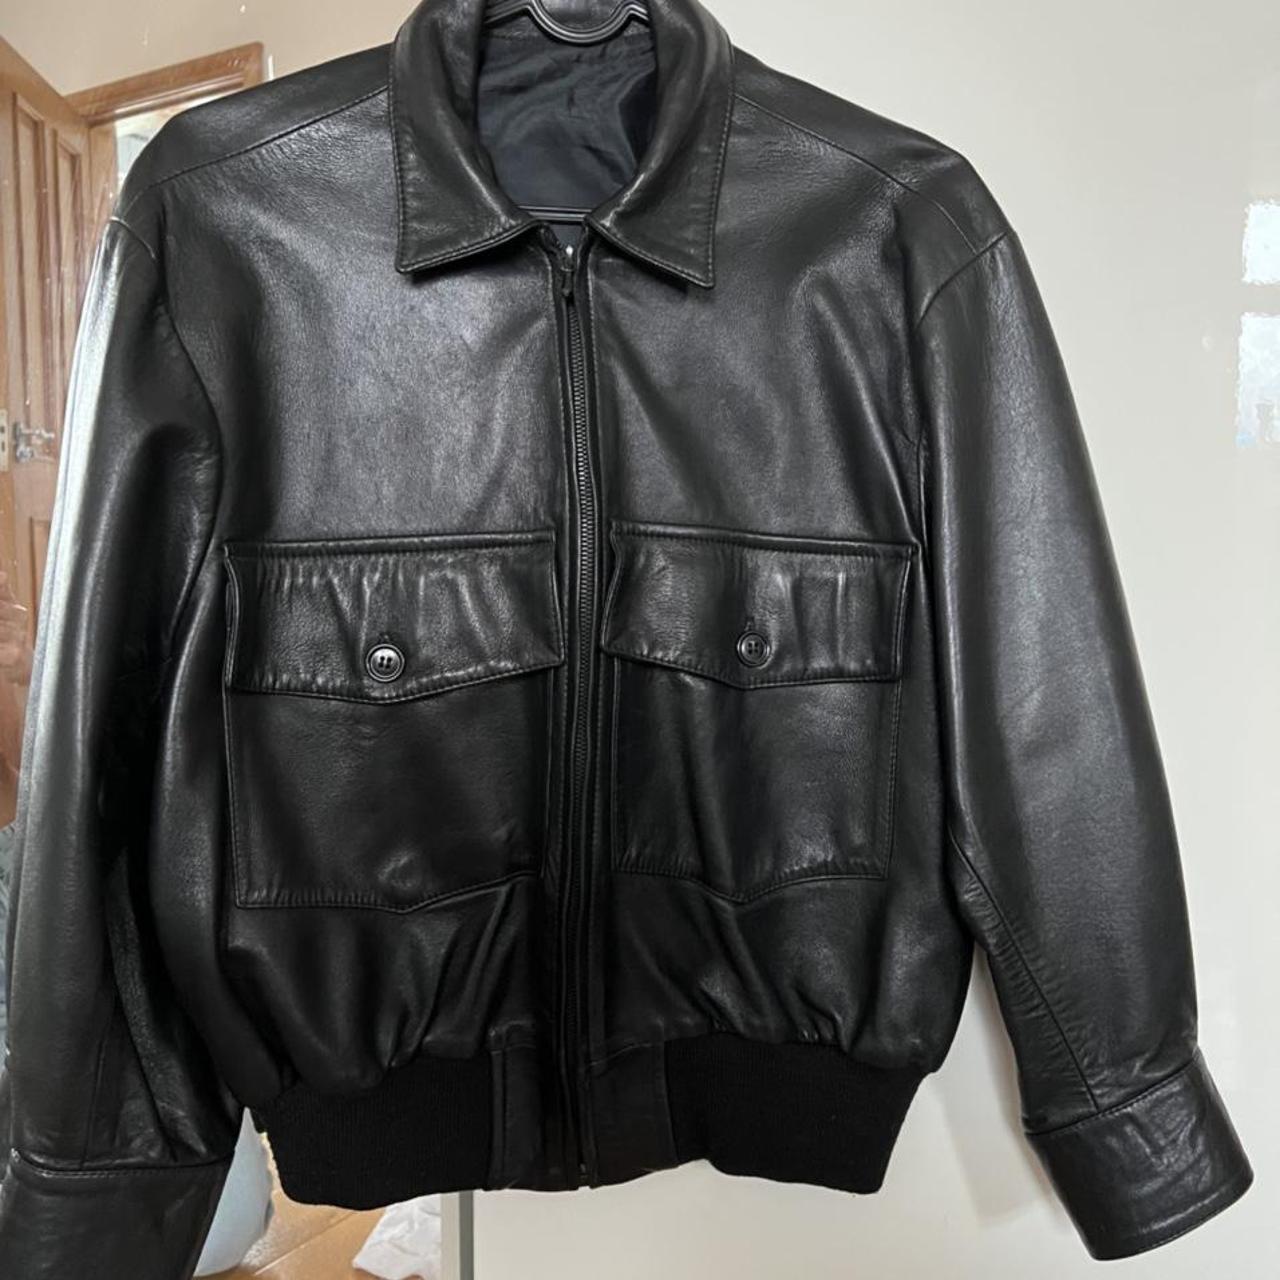 Black leather bomber jacket Bought on vinted -... - Depop